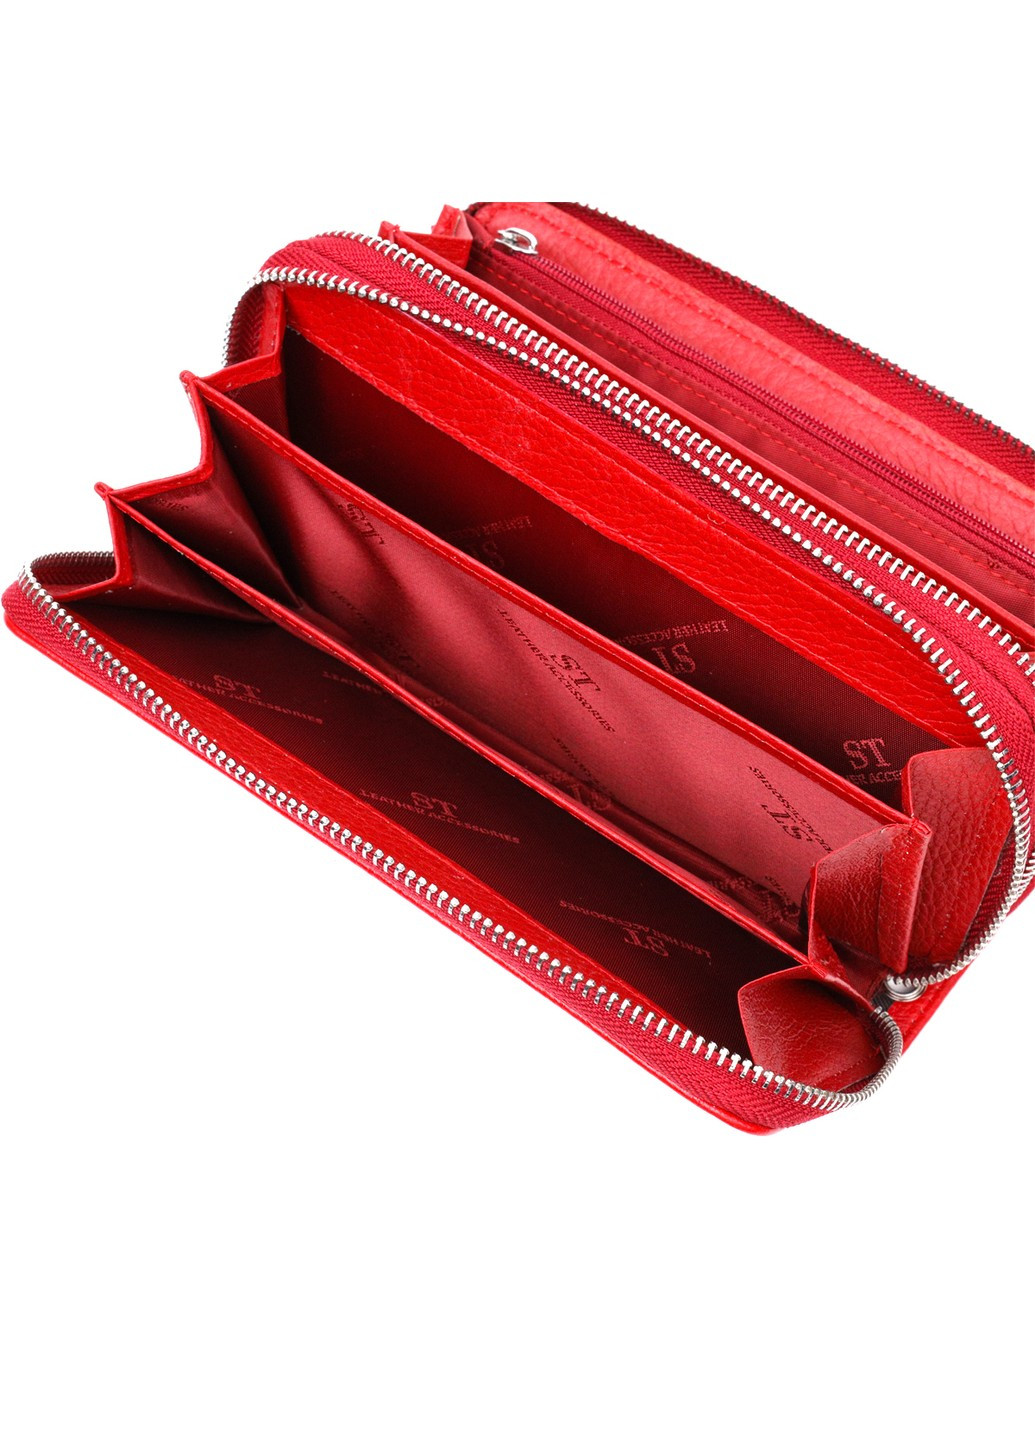 Яркий женский кошелек-клатч с двумя отделениями на молниях 19430 Красный st leather (276461858)